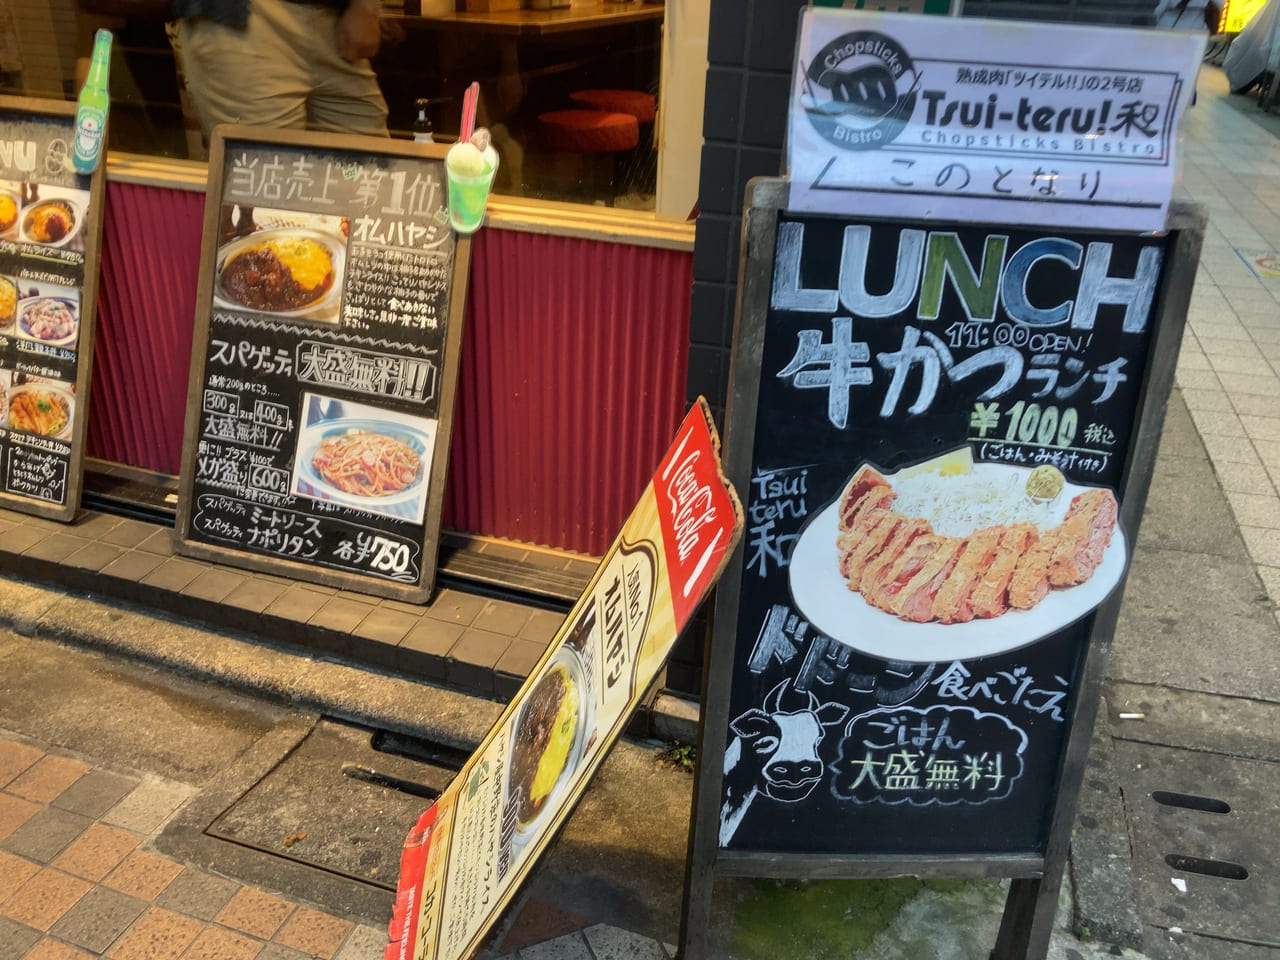 中野区 牛カツランチが人気の ツイテル Tsui Teru 和 で美味しい熟成料理が楽しめます 号外net 中野区